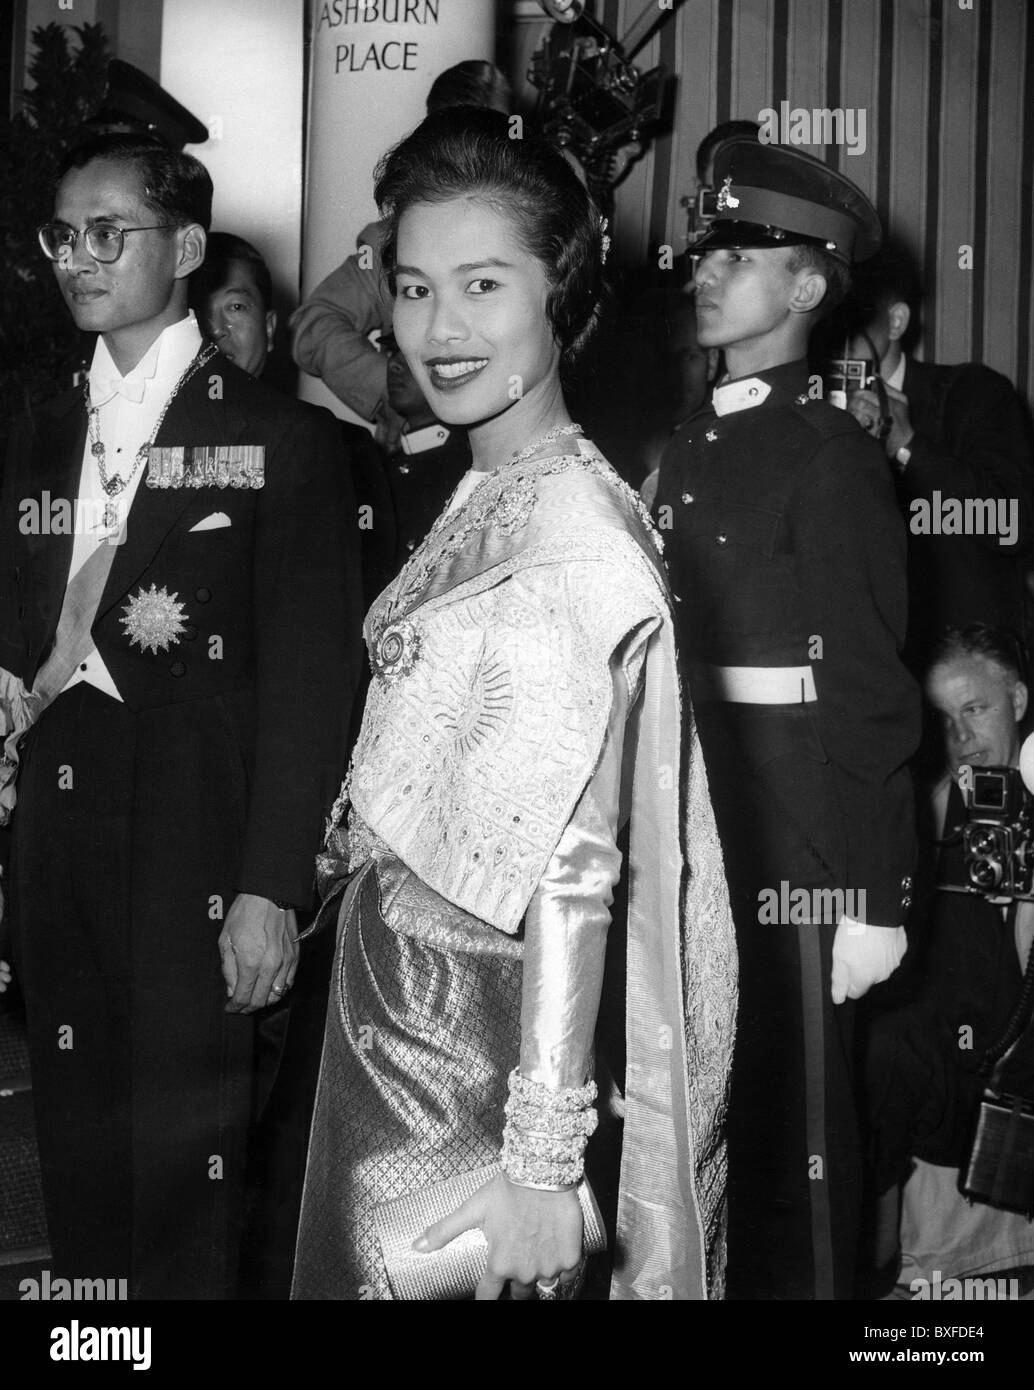 Rama IX Bhumibol Adulyadai, 5.12.1927 - 13.10.2016, roi de Thaïlande depuis 9.6.1946, visite d'État en Grande-Bretagne, épouse Reine Sirikit, réception à l'ambassade de Thaïlande, Ashburn Place, Londres, 21.7.1960, , Banque D'Images